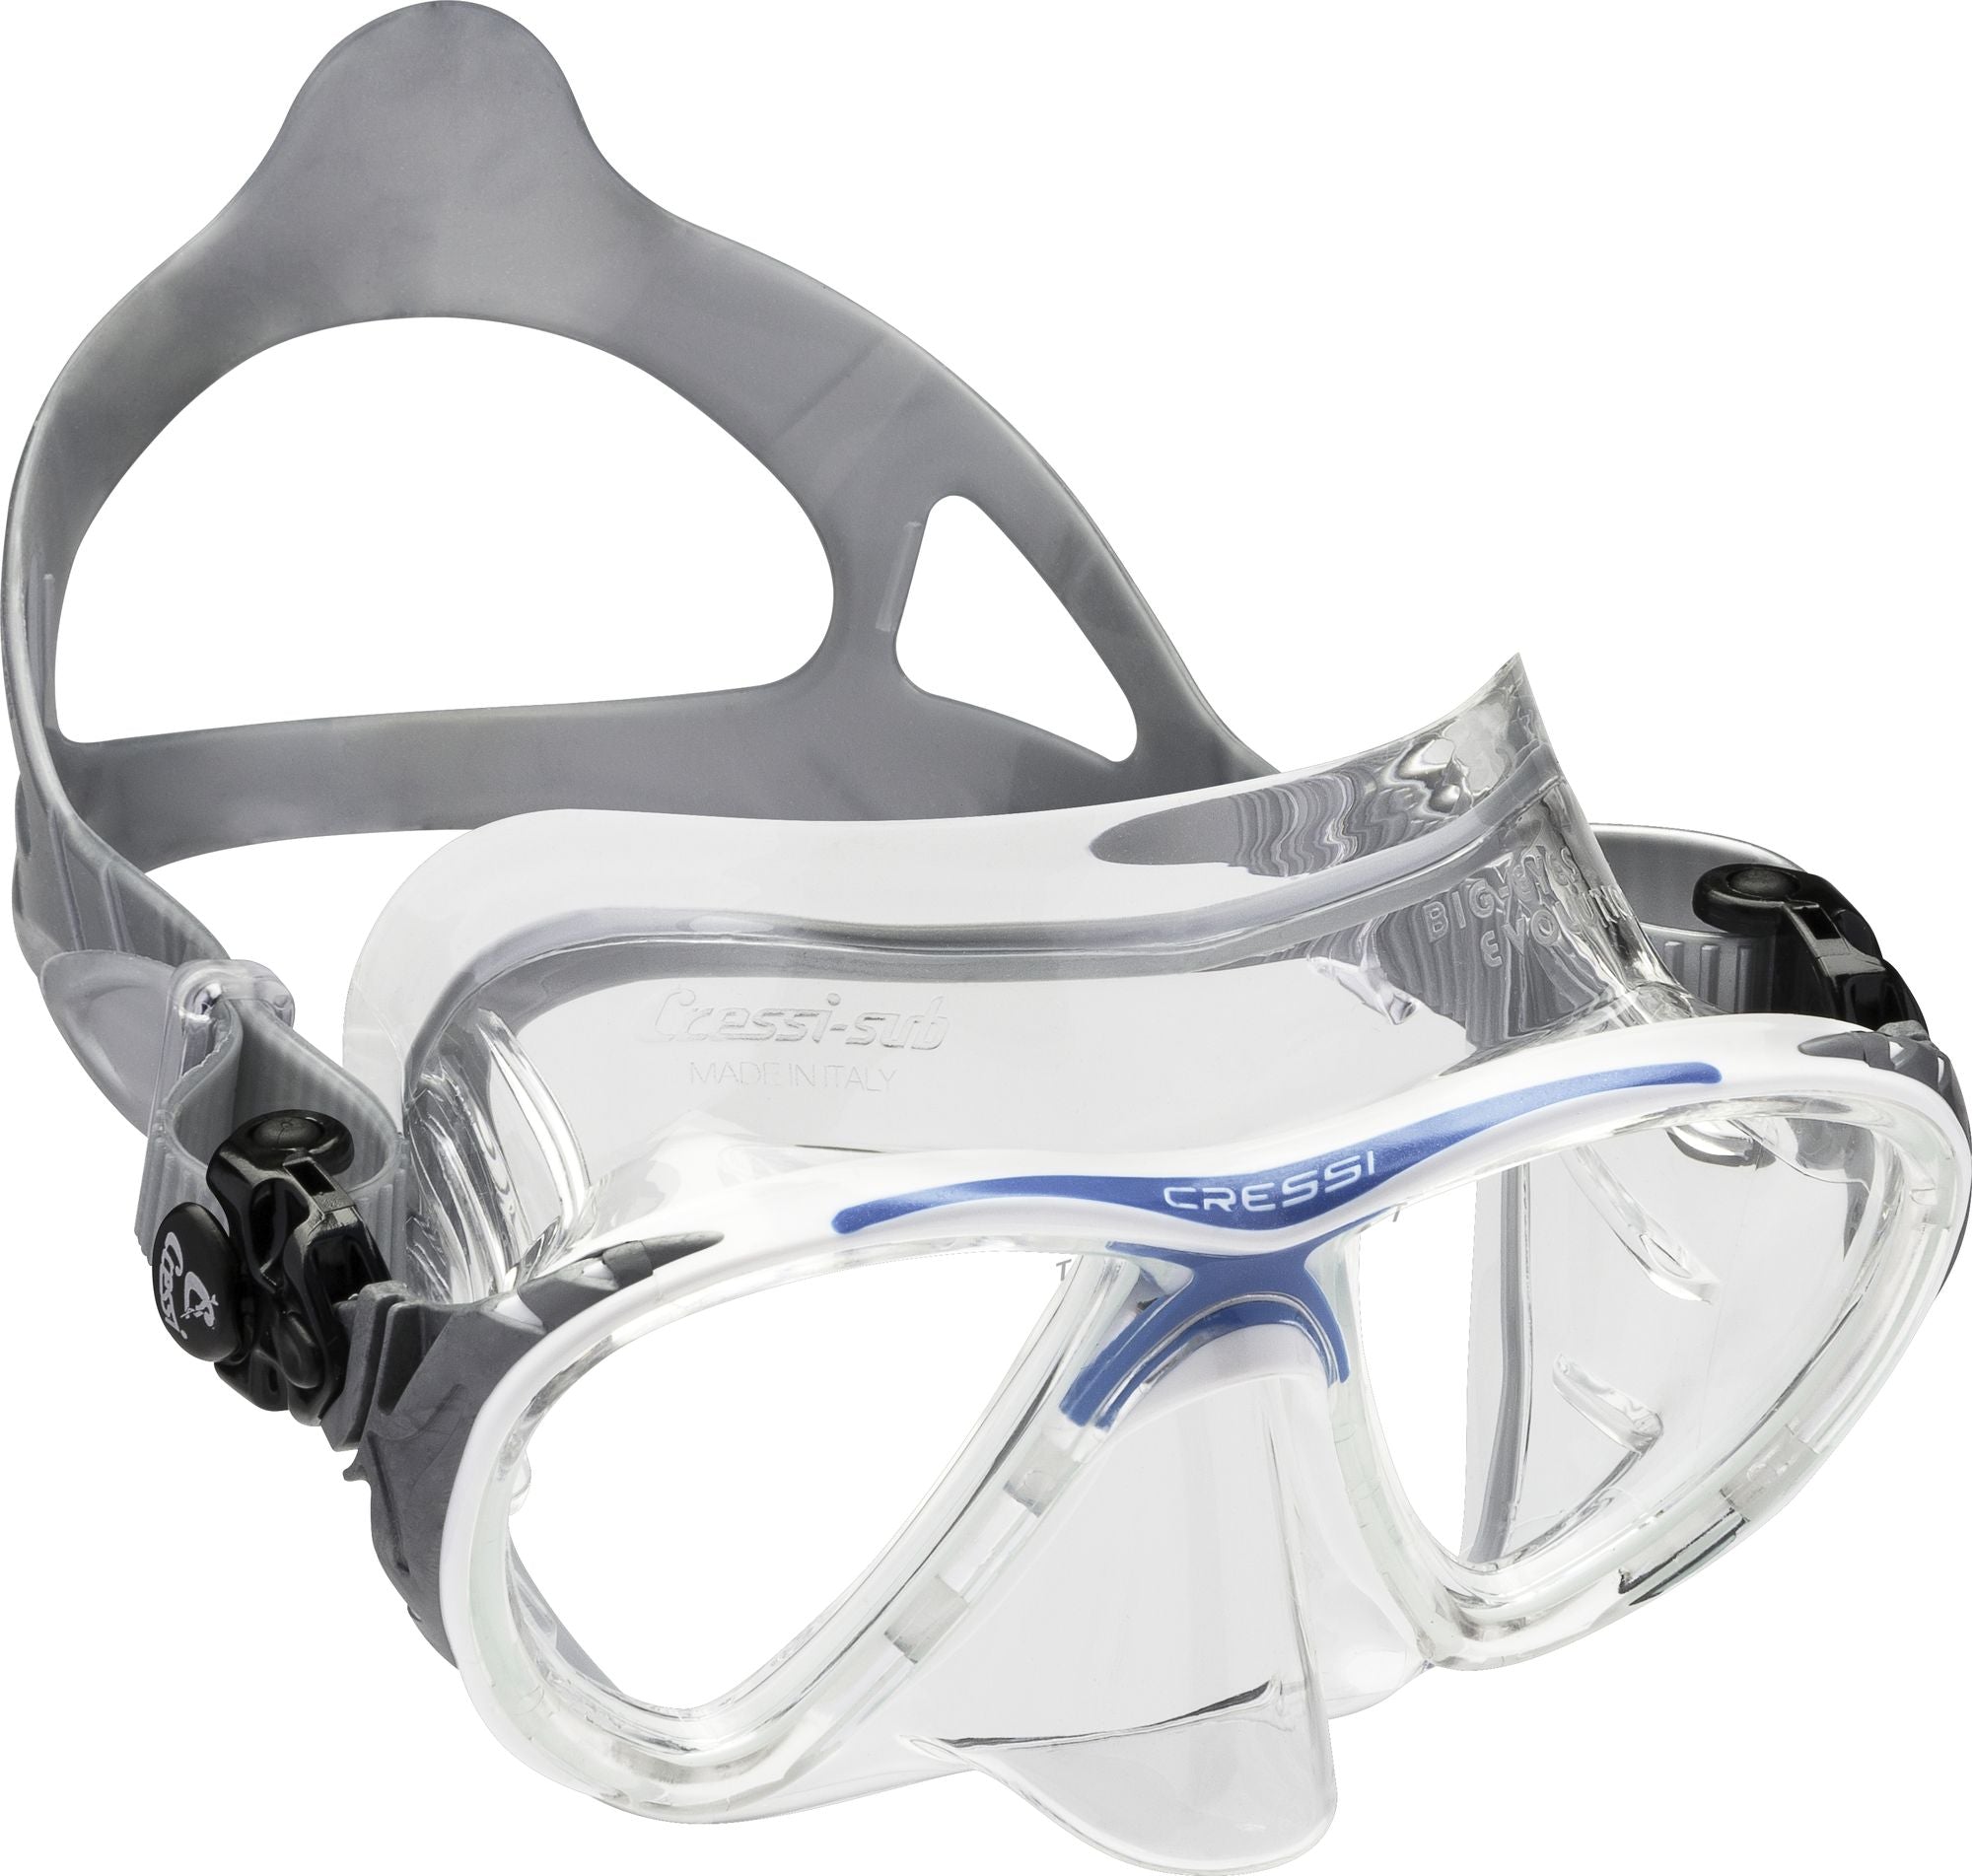 Big Eyes Evolution Crystal Mask - Scuba mask, Snorkelling mask